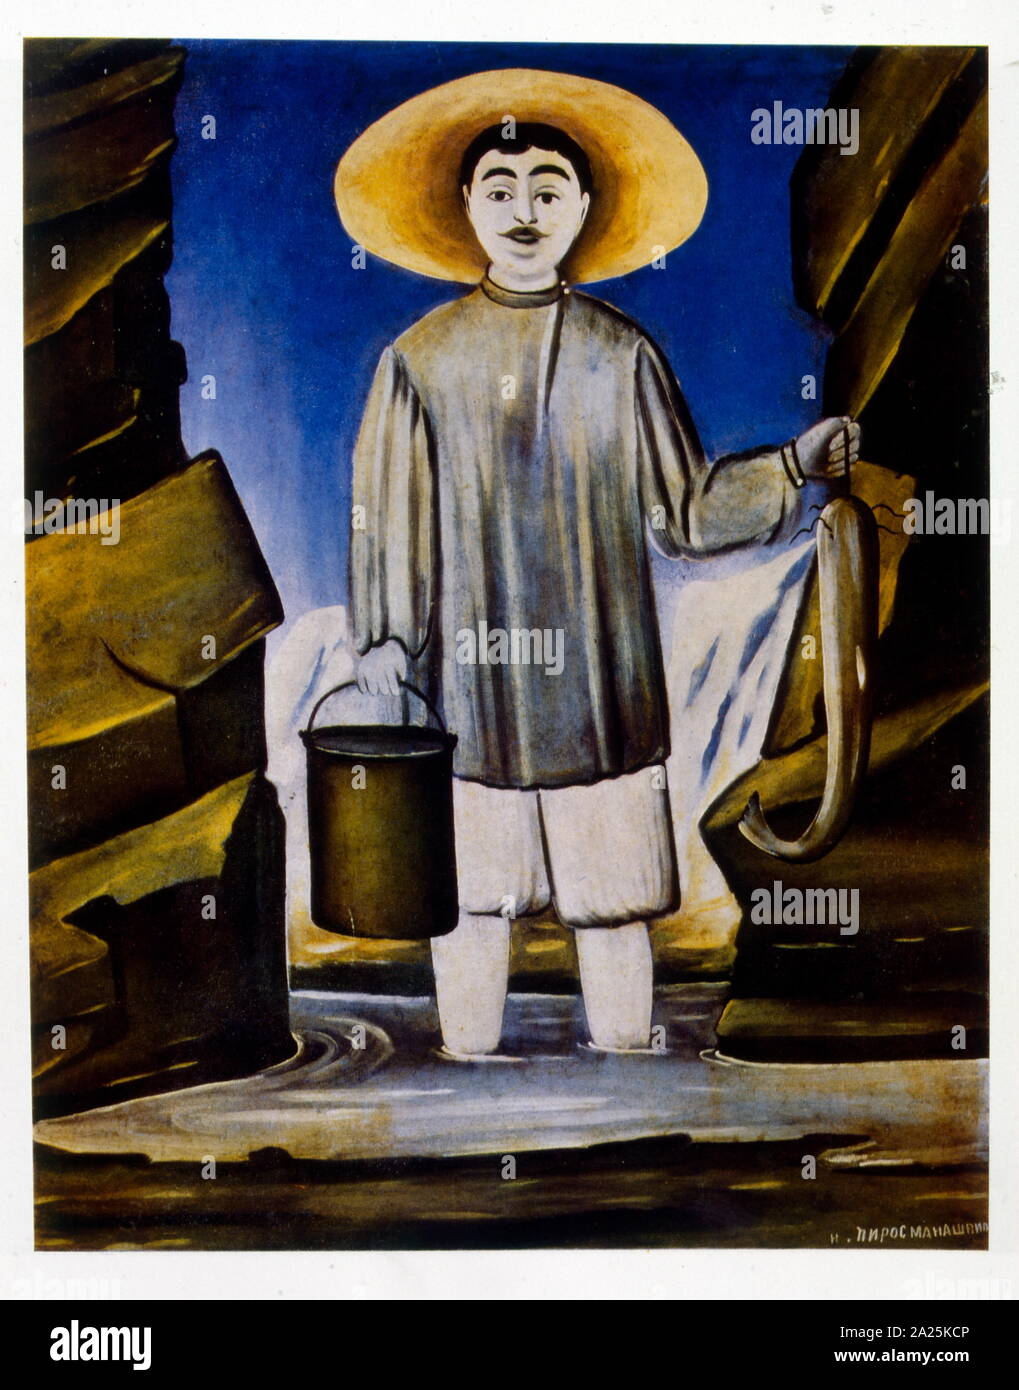 Pêcheur, 1904 par Niko Pirosmani (1862-1918), russe, géorgien, peintre du primitivisme qui a pris de l'importance à titre posthume. Banque D'Images